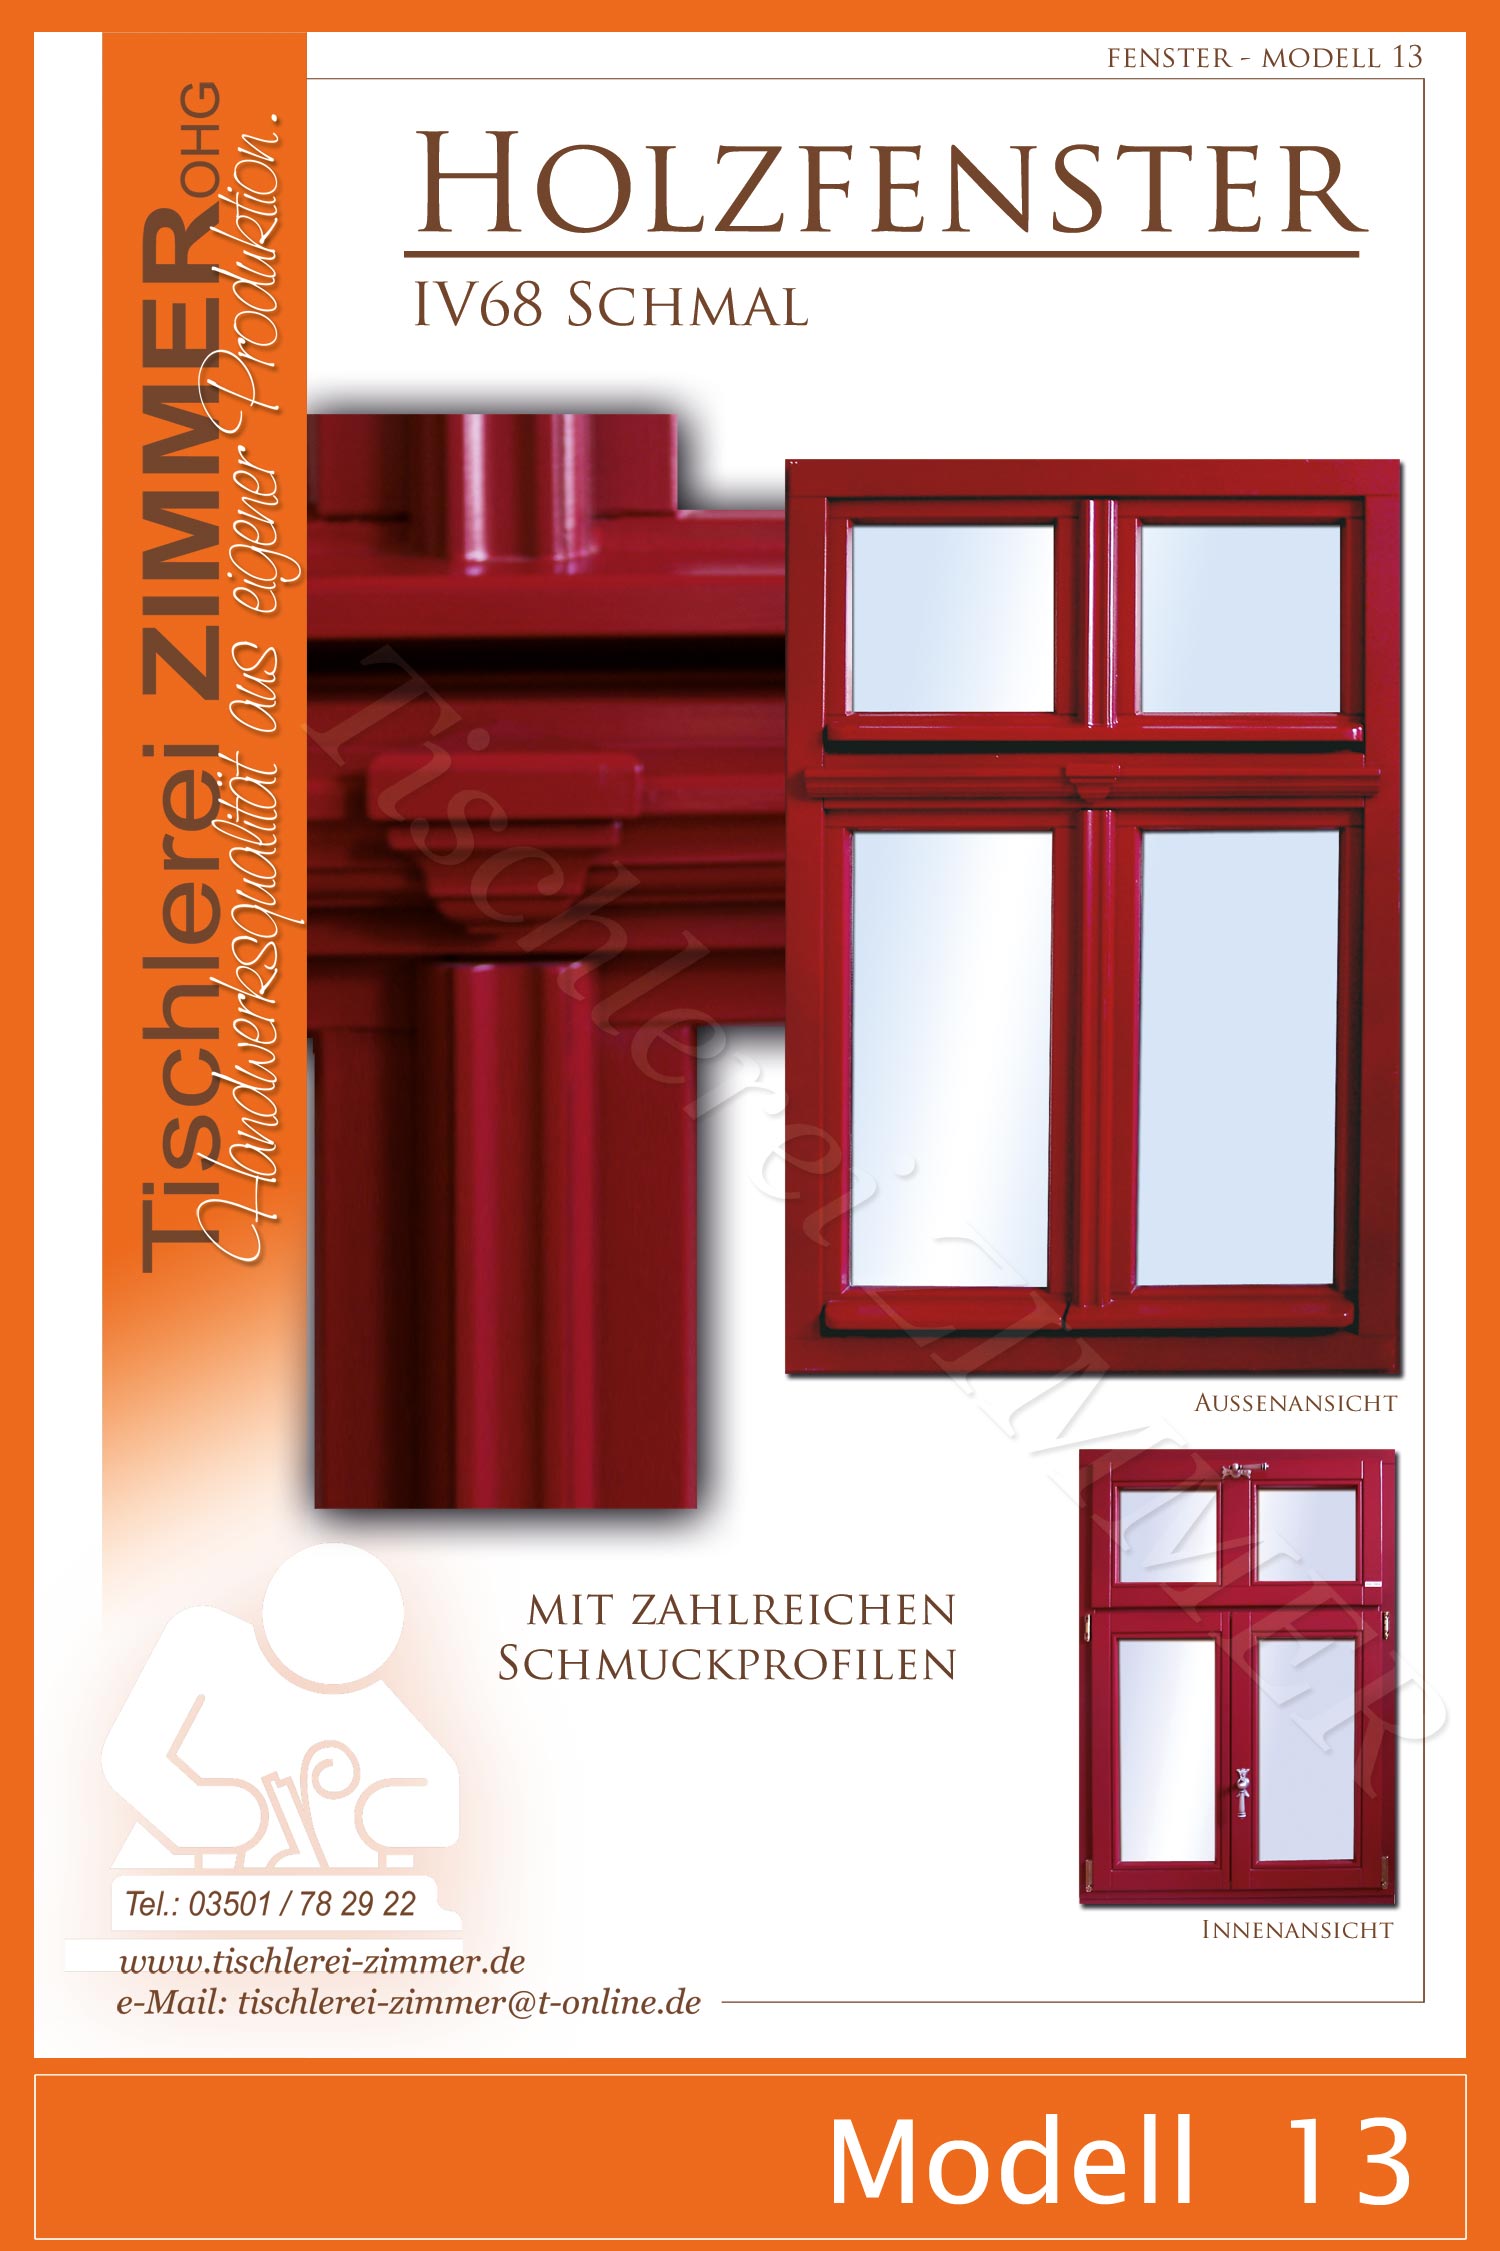 Modell 13 - traditionelle Holzfenster mit Zierprofilen in Rot